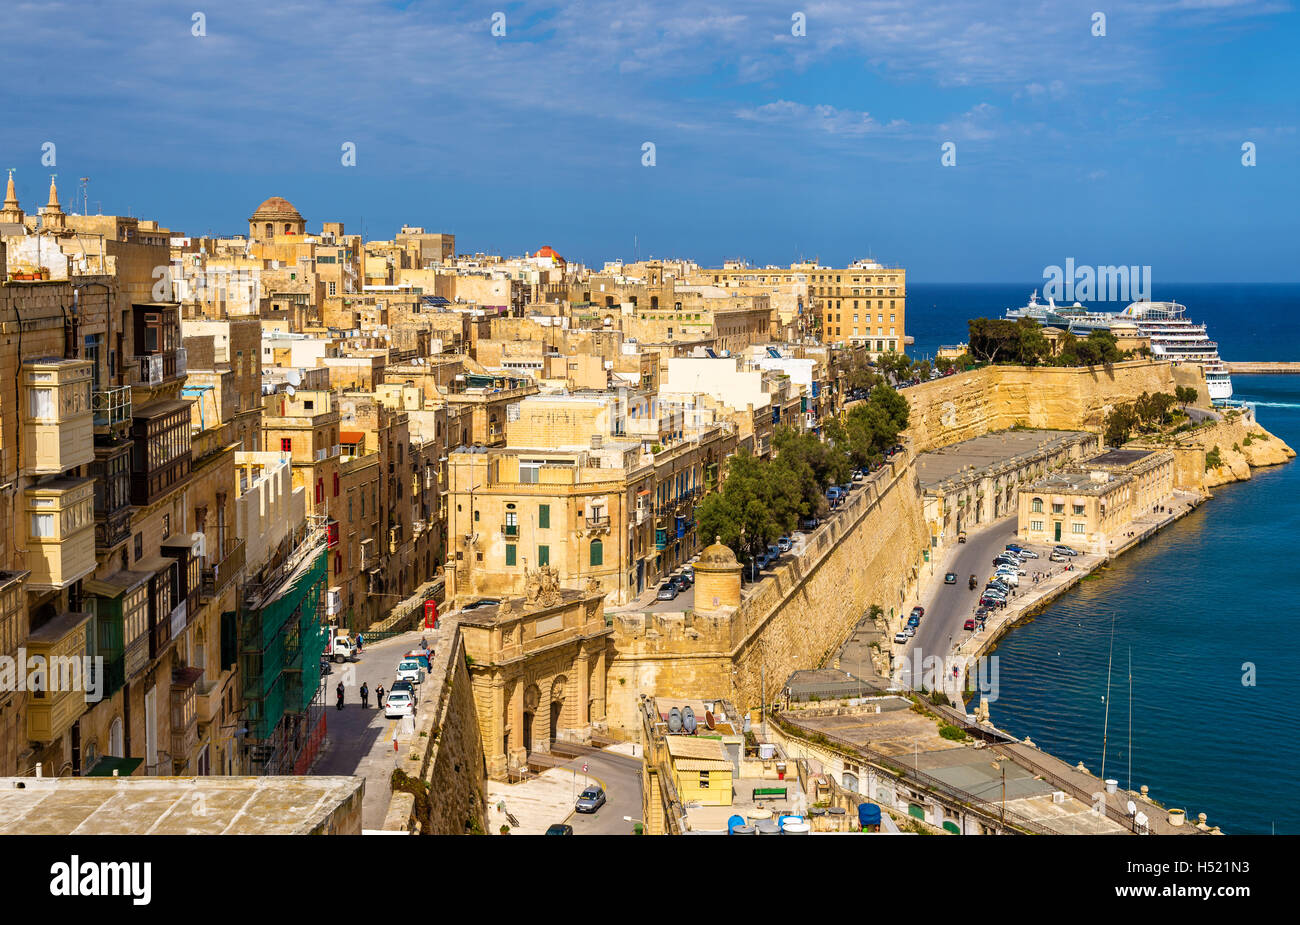 View of the historic centre of Valletta - Malta Stock Photo